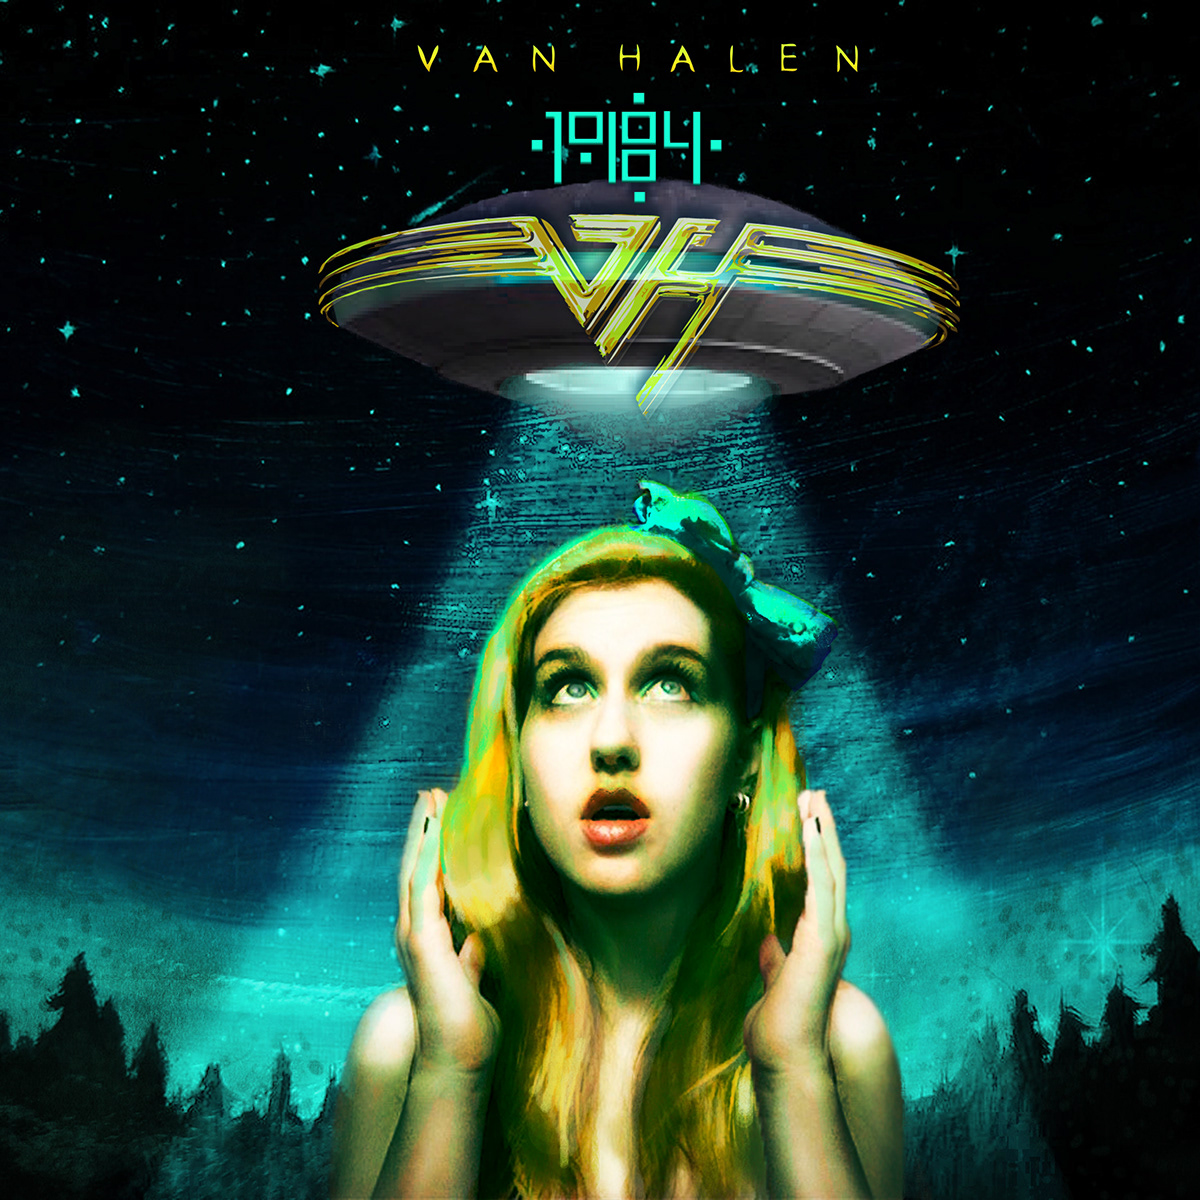 Van Halen 1984 album aliens